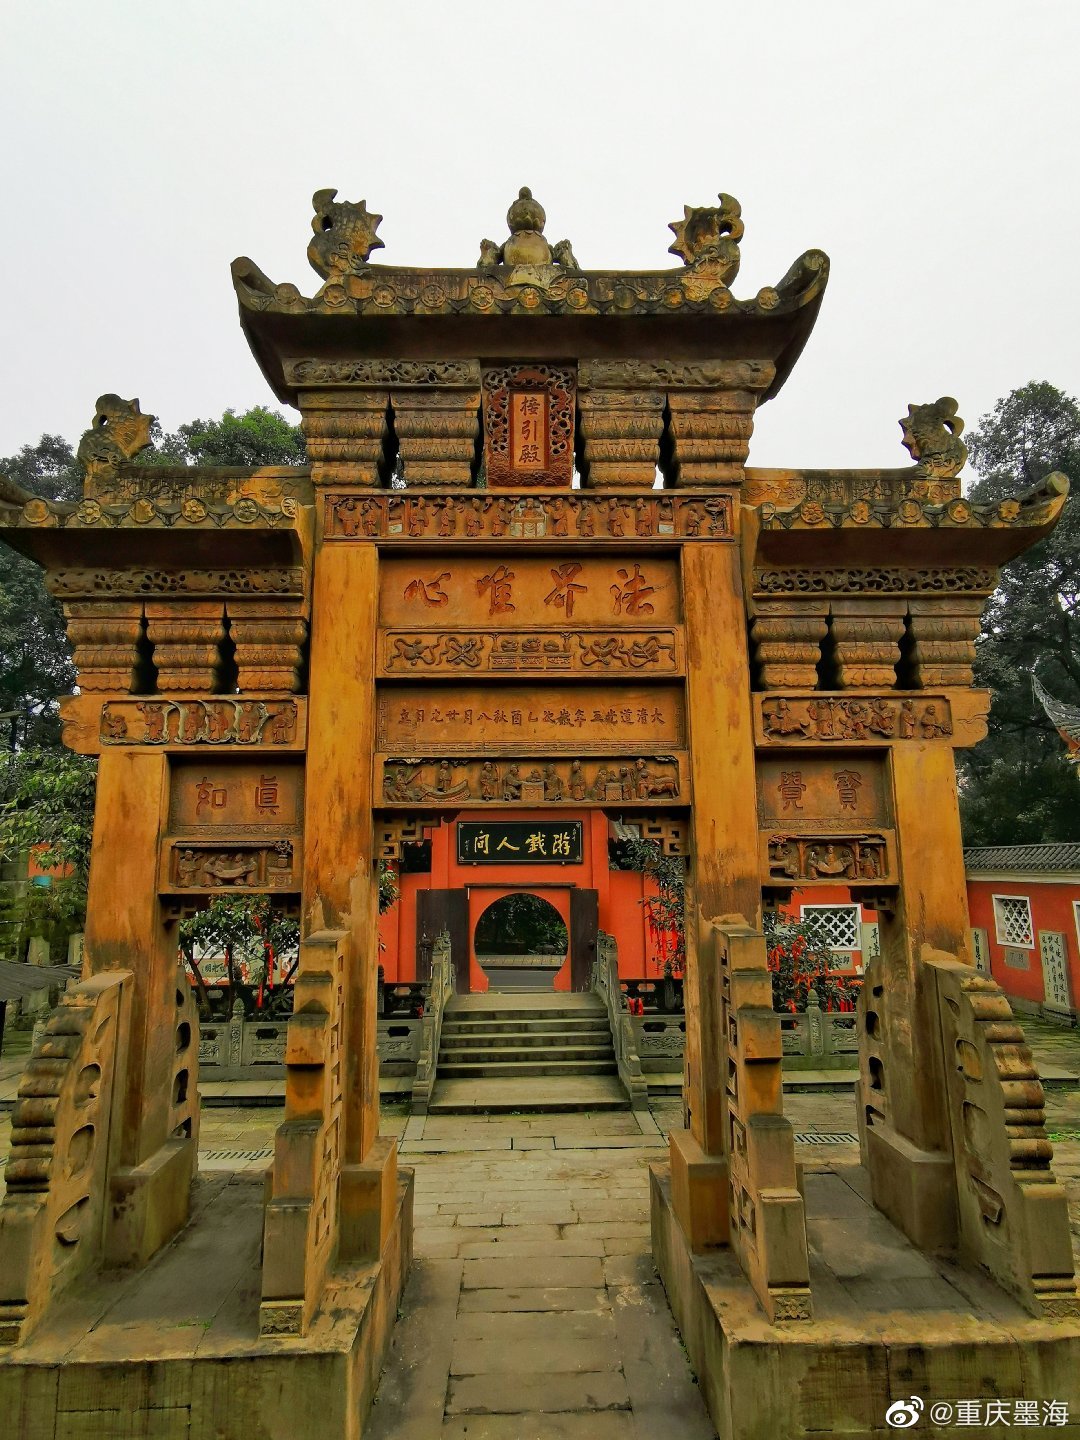 【携程攻略】重庆华岩寺景点,应该是重庆最大最有名的寺庙了，但是去的时候人不算很多，有些建筑很…